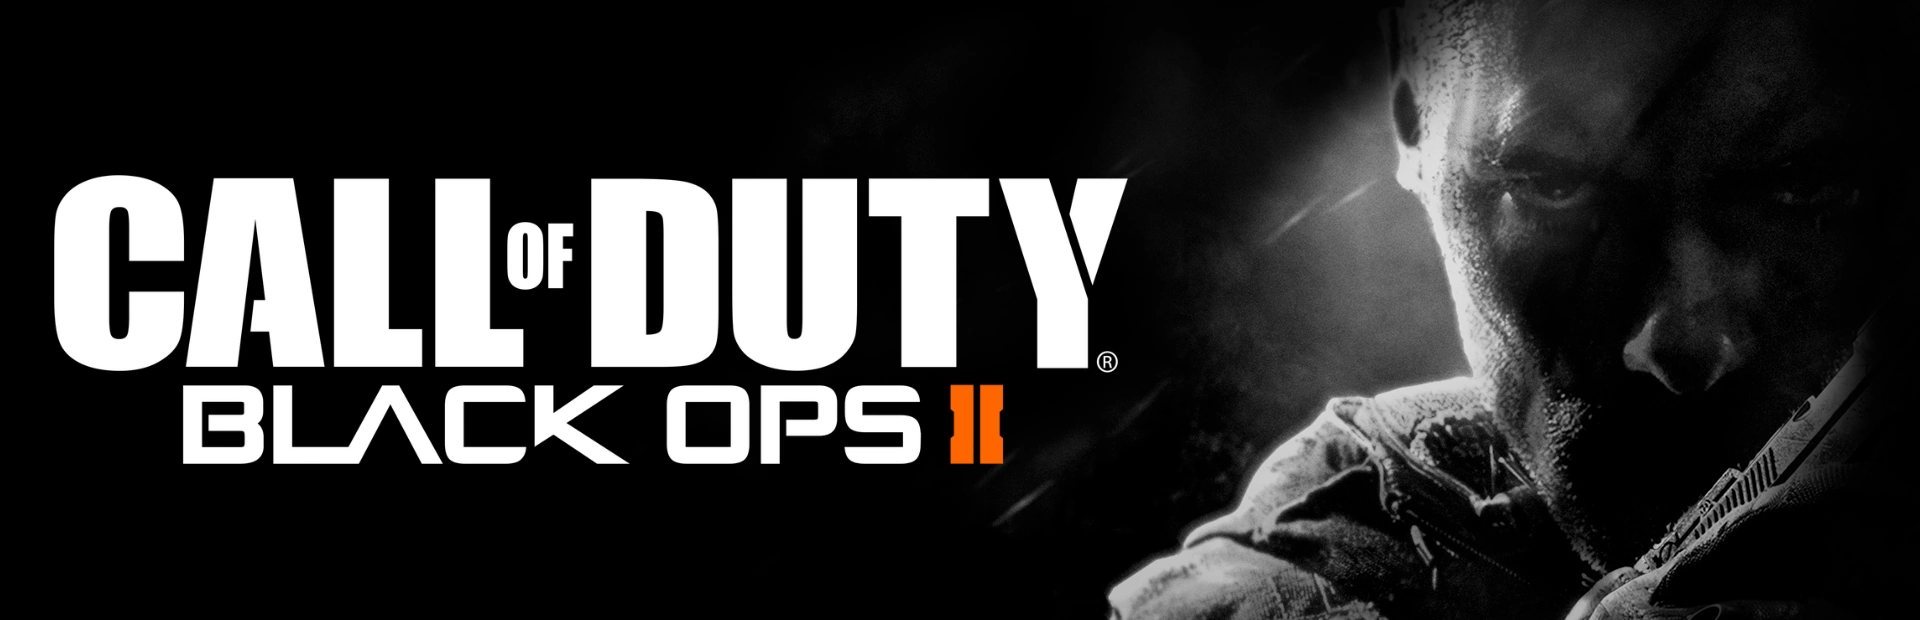 دانلود بازی Call of Duty: Black Ops II برای کامپیوتر | گیمباتو